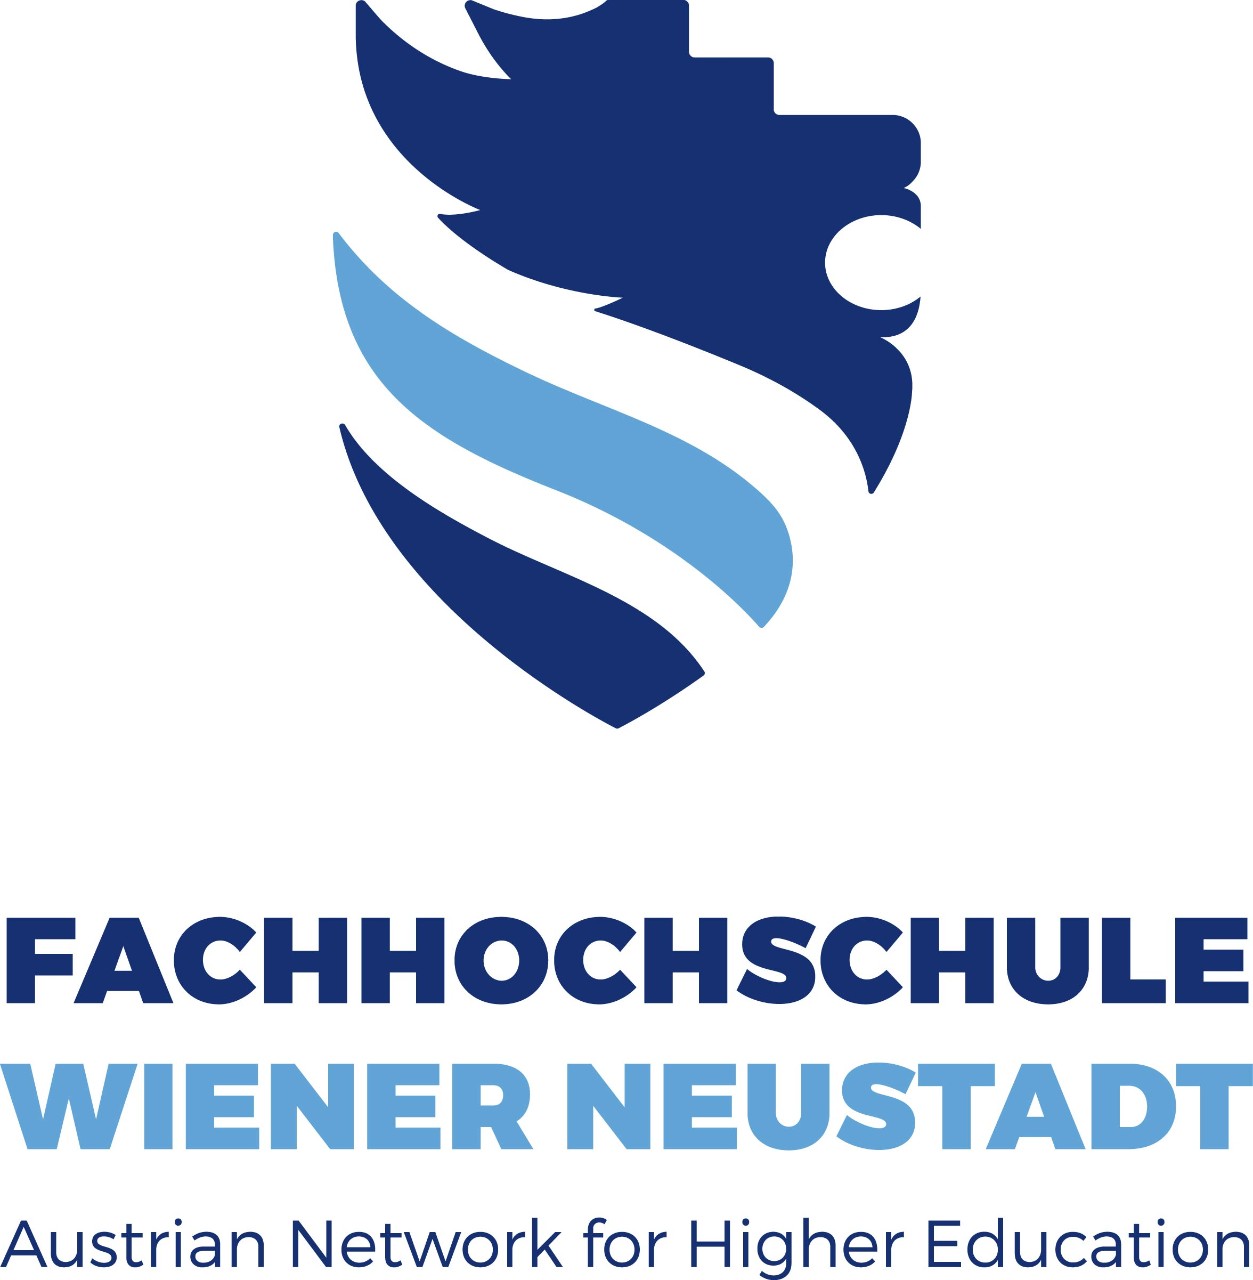 University of Applied Sciences Wiener Neustadt logo